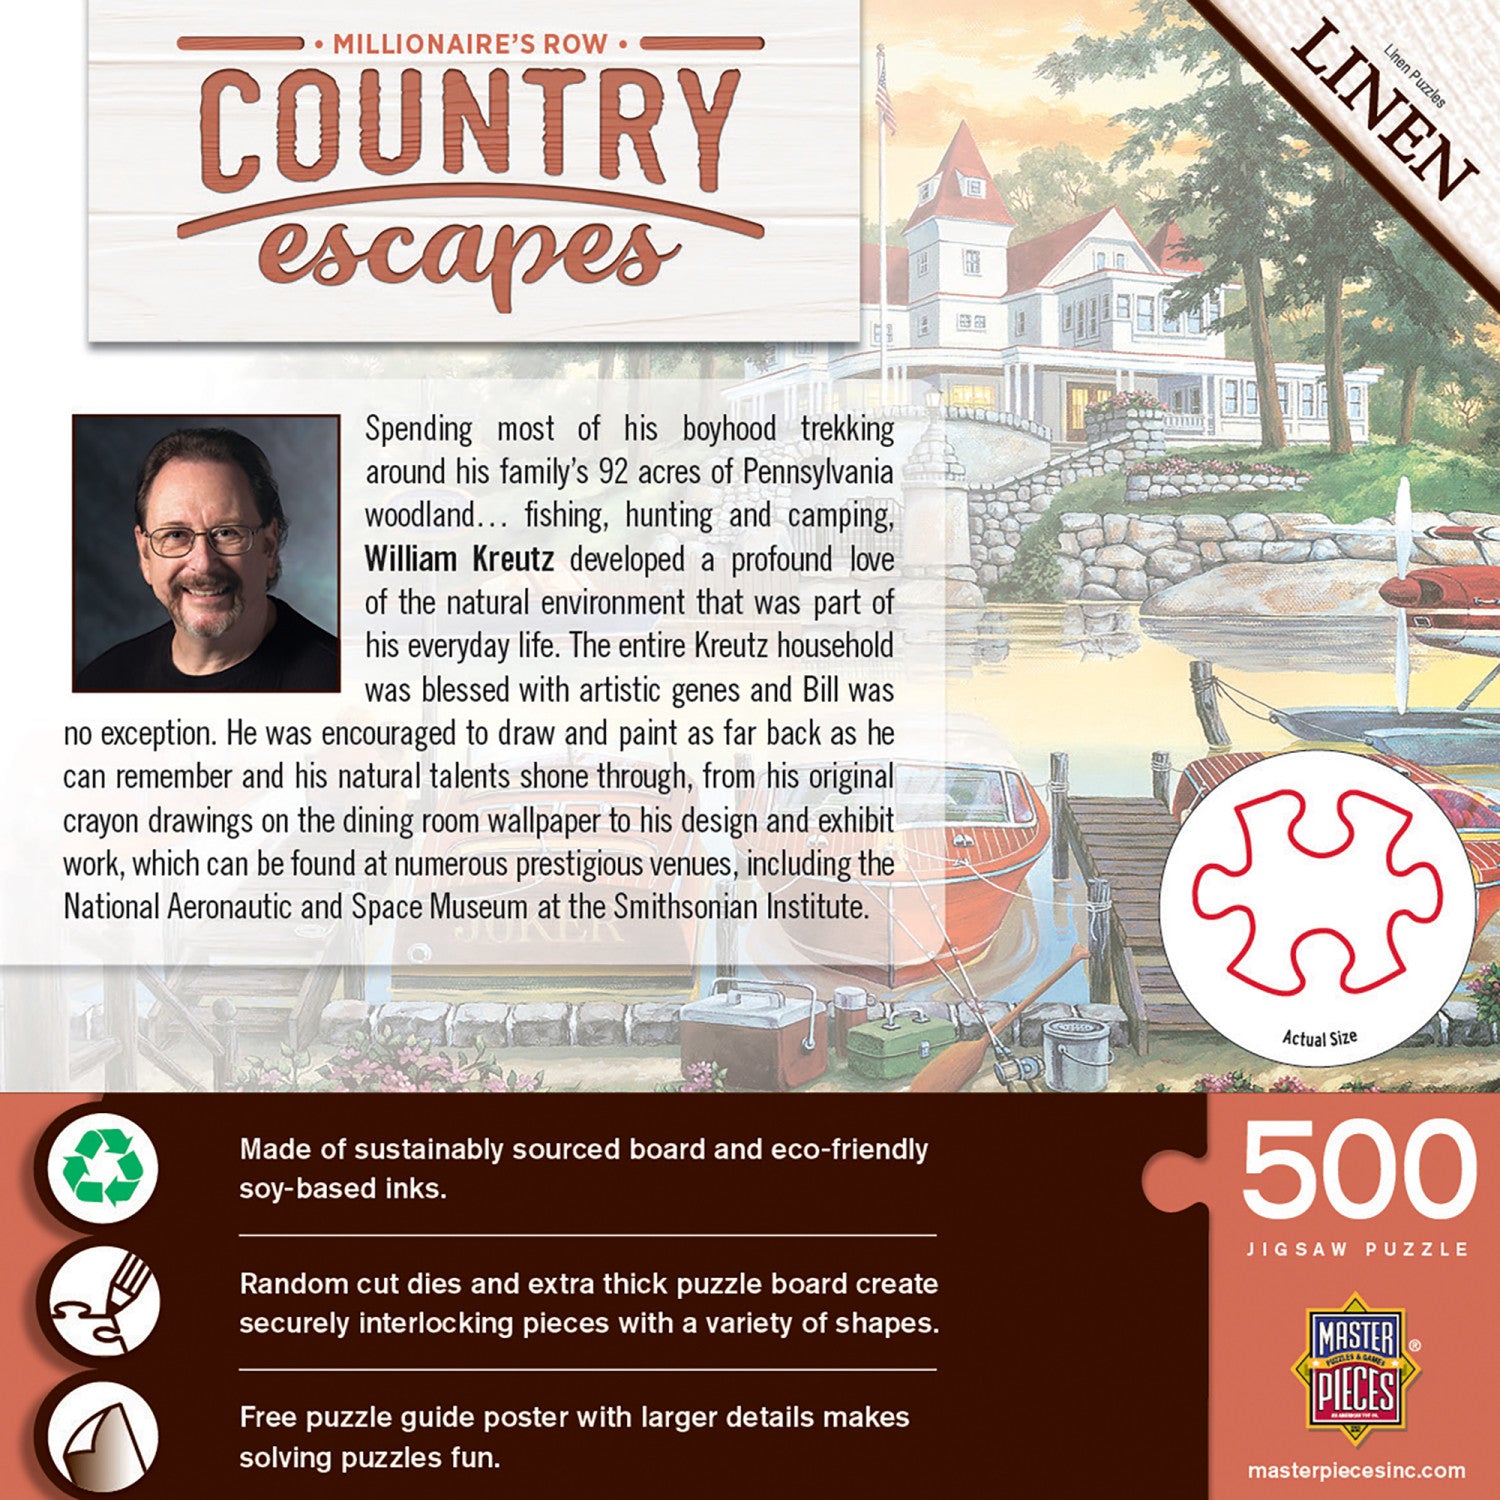 Country Escapes - Millionaire's Row 500 Piece Puzzle